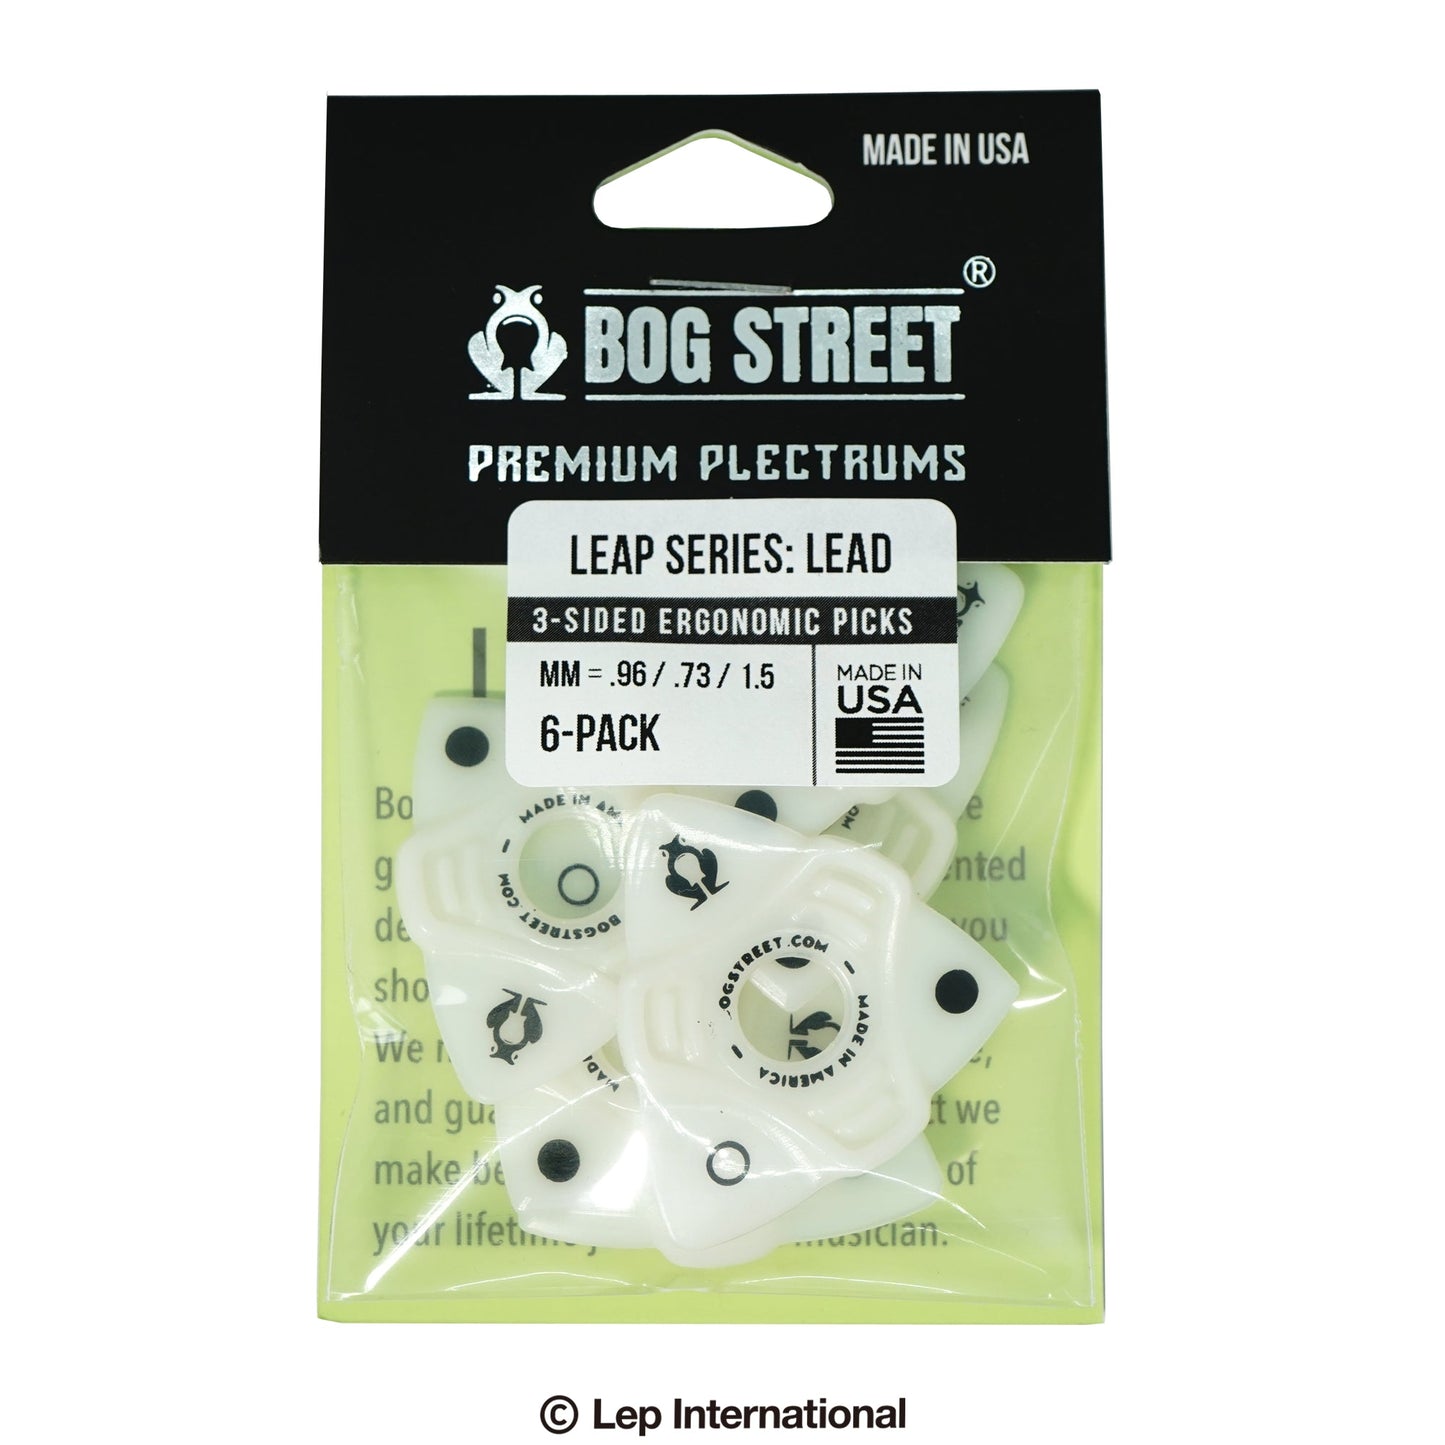 BOG STREET/LEAP Series Lead 6-pack